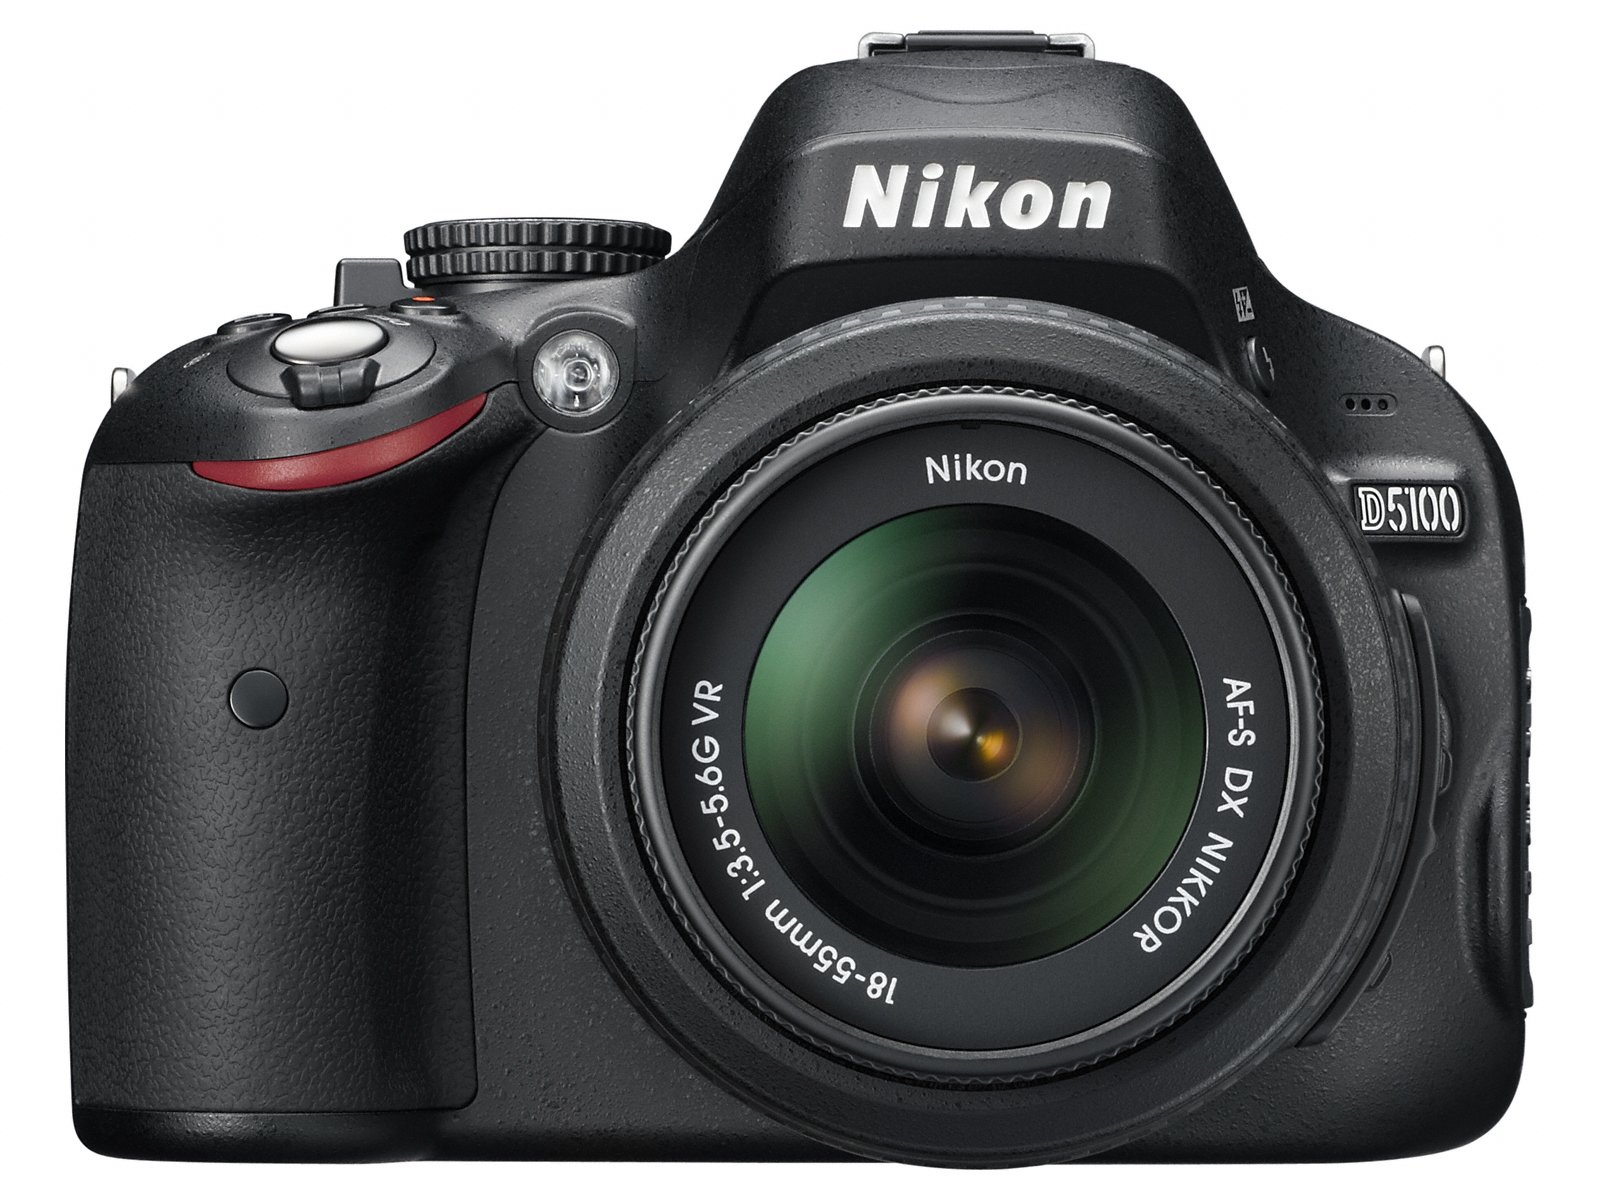 Nikon D5100 trang bị chức năng D-movie